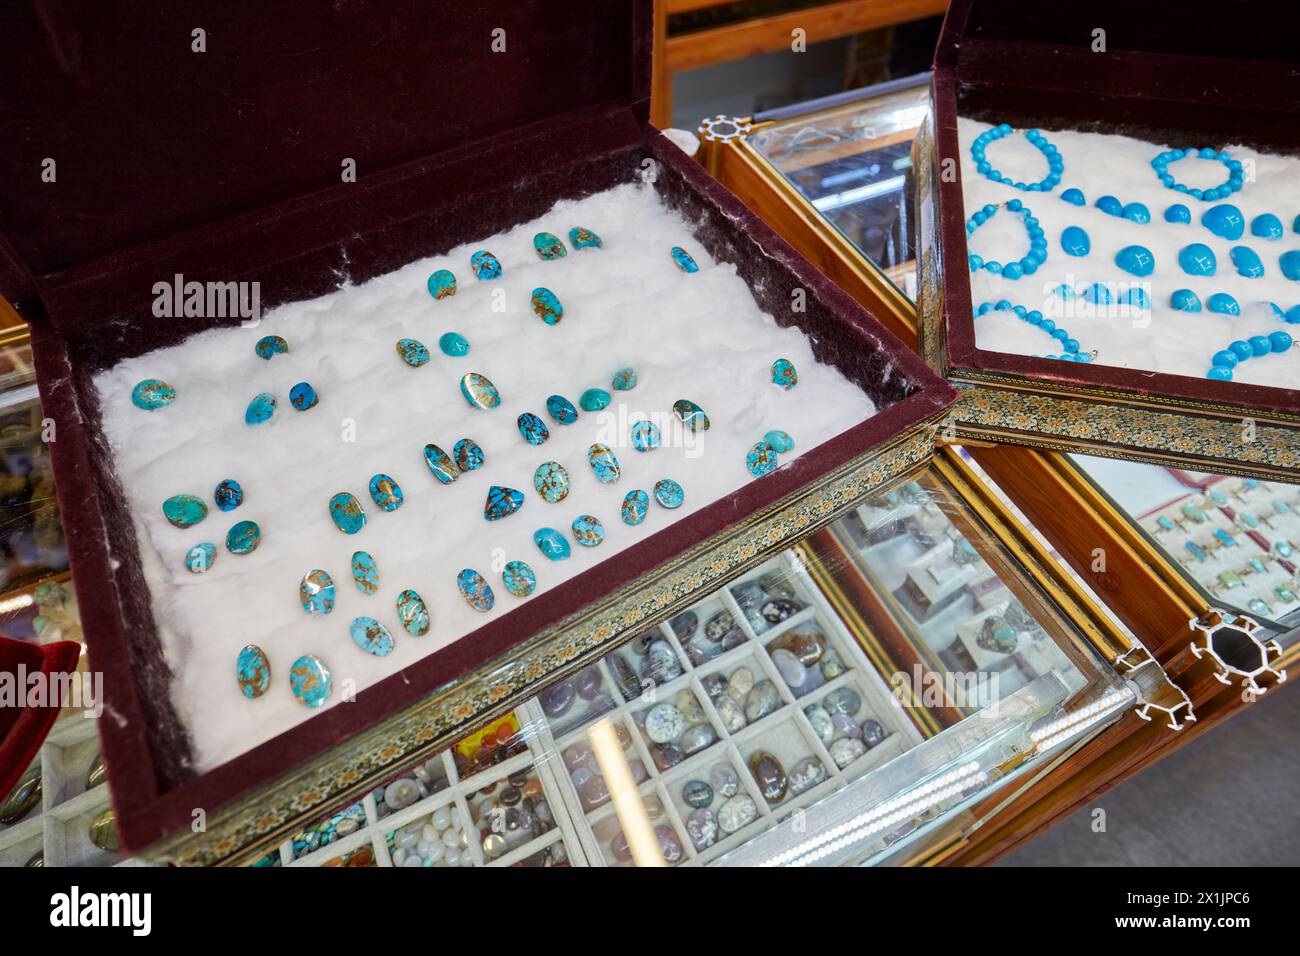 Eine Auswahl polierter persischer türkisfarbener Edelsteine in einem Juweliergeschäft in Isfahan, Iran. Stockfoto